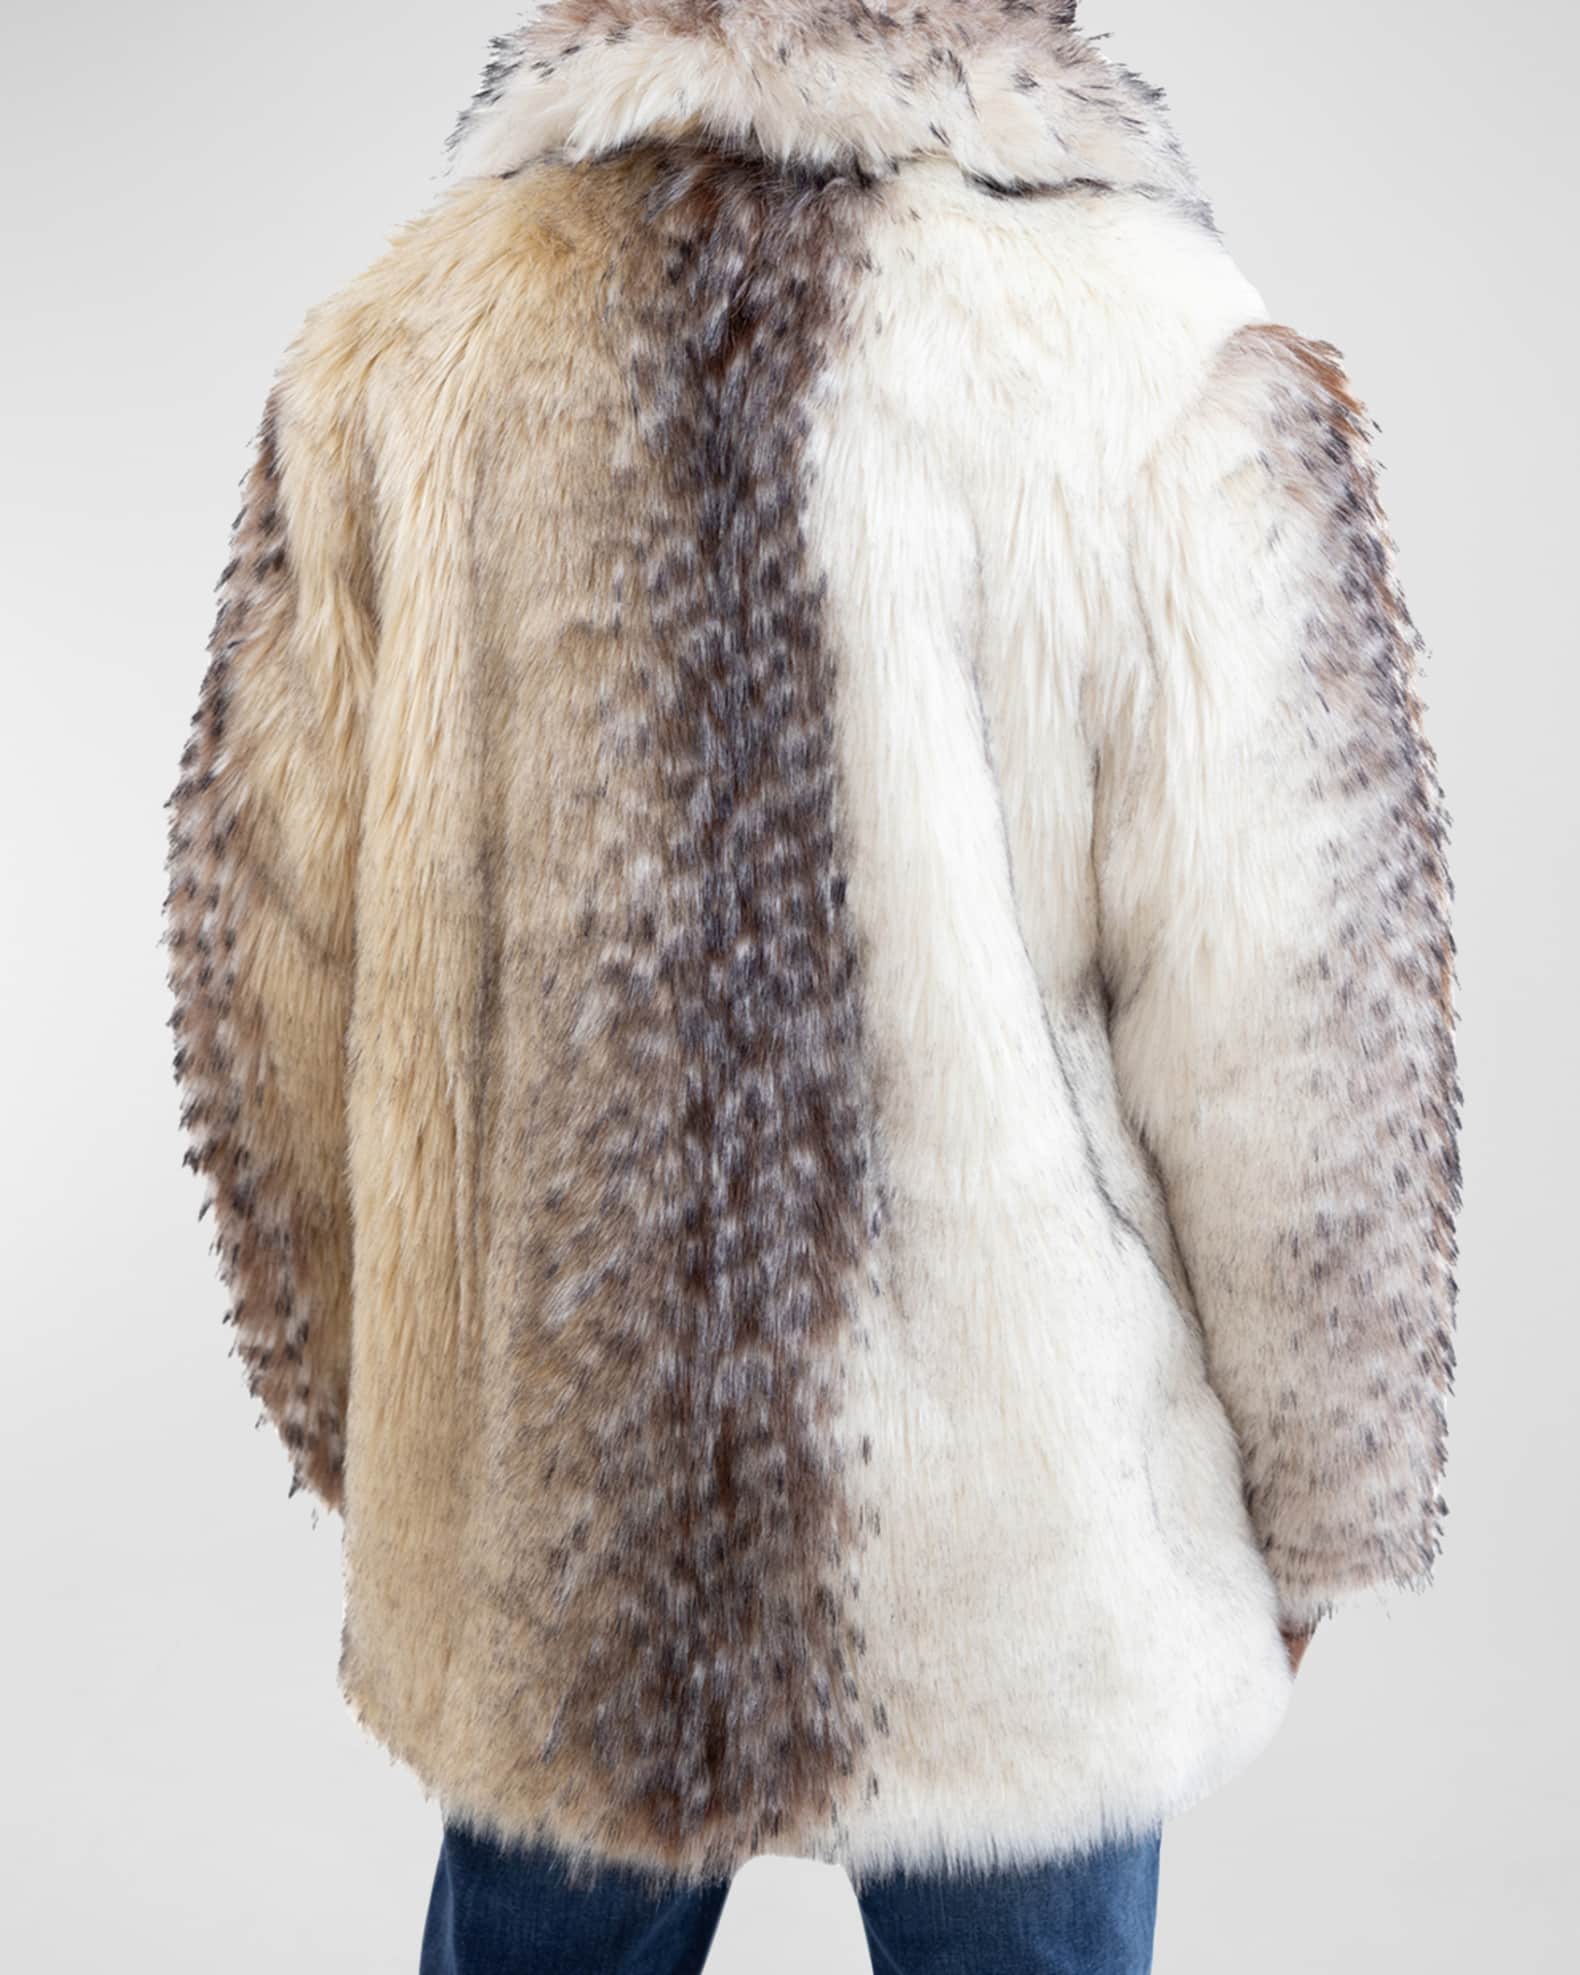 Men's Charcoal Faux Fur-Trimmed Storm Coat - Fabulous-Furs